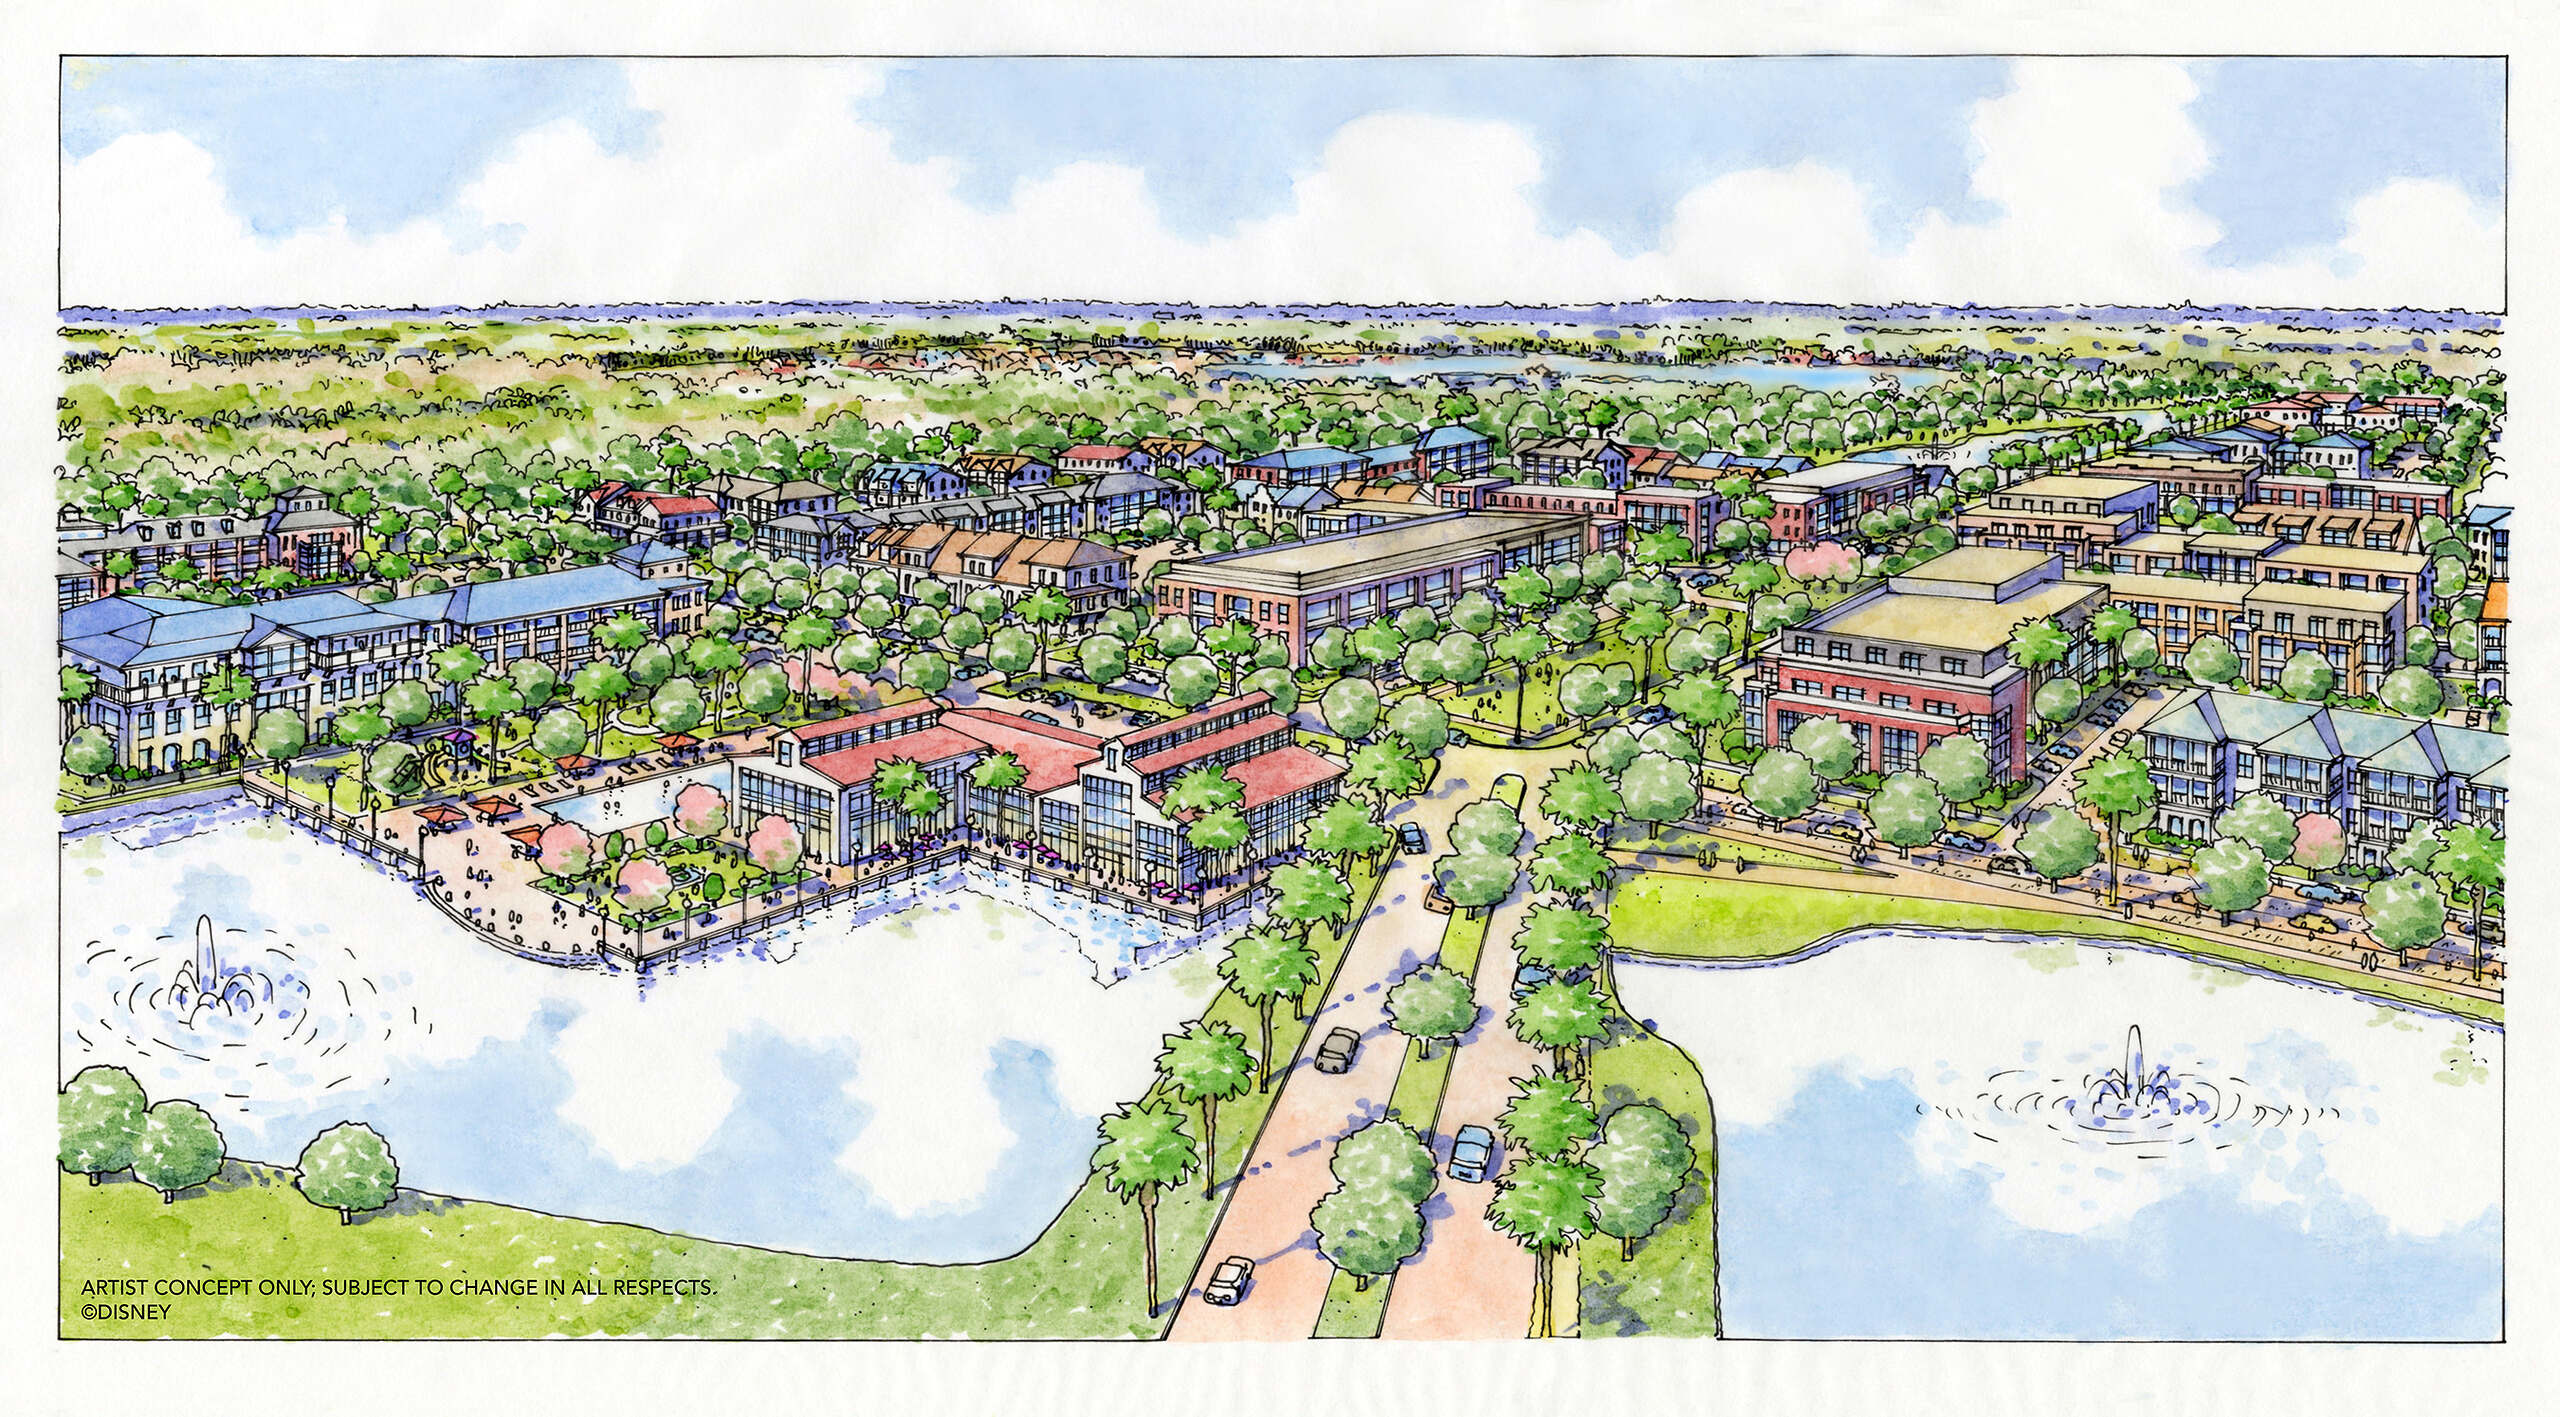 Walt Disney World Earmarks 80 Acres for New Affordable Housing Development